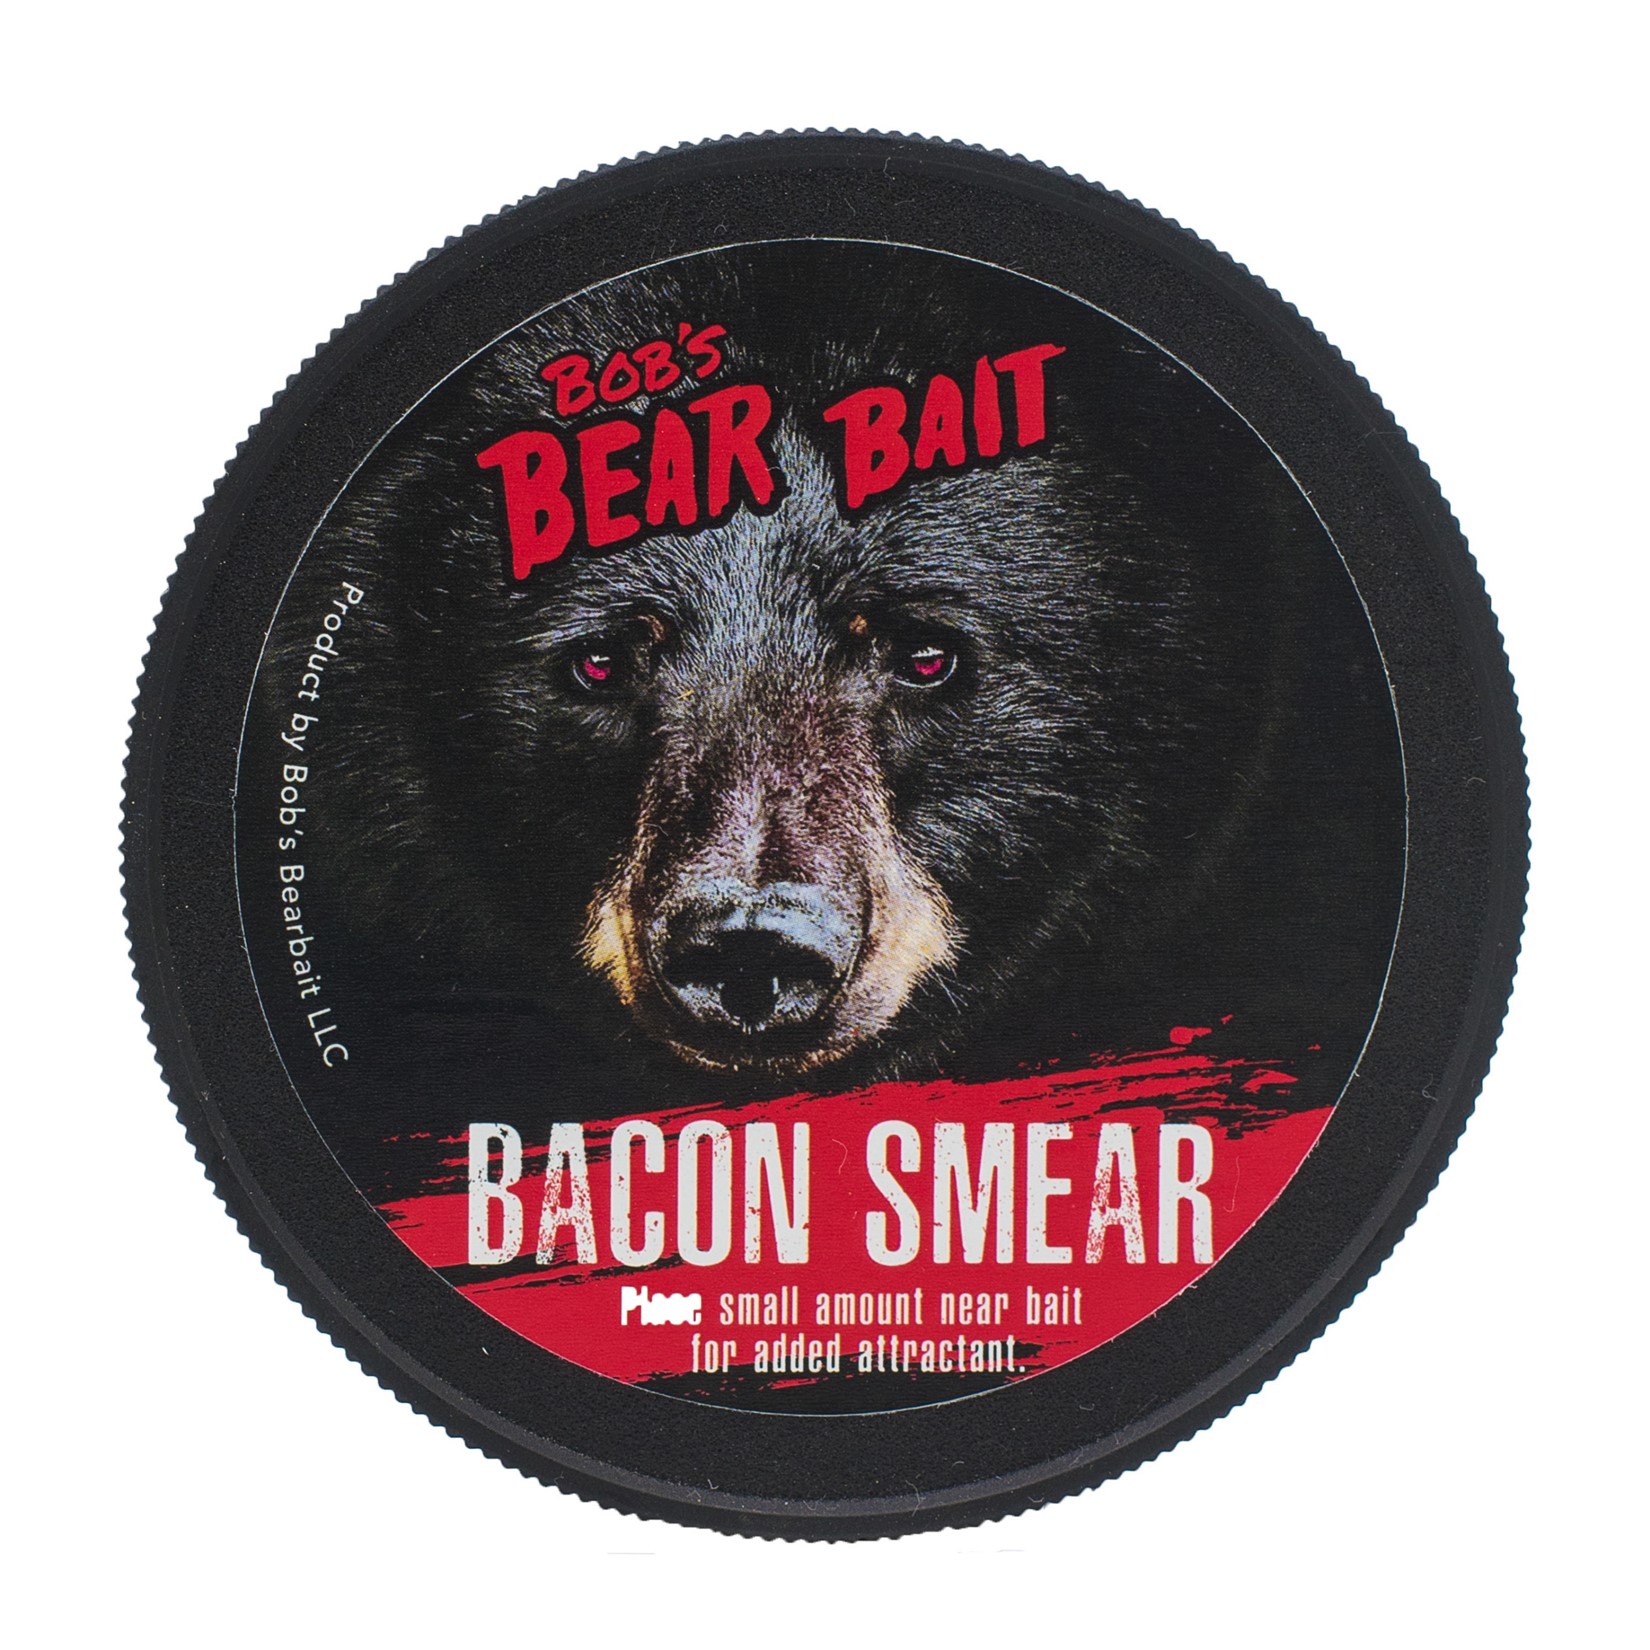 Bacon Smear – Bobs Bear Bait